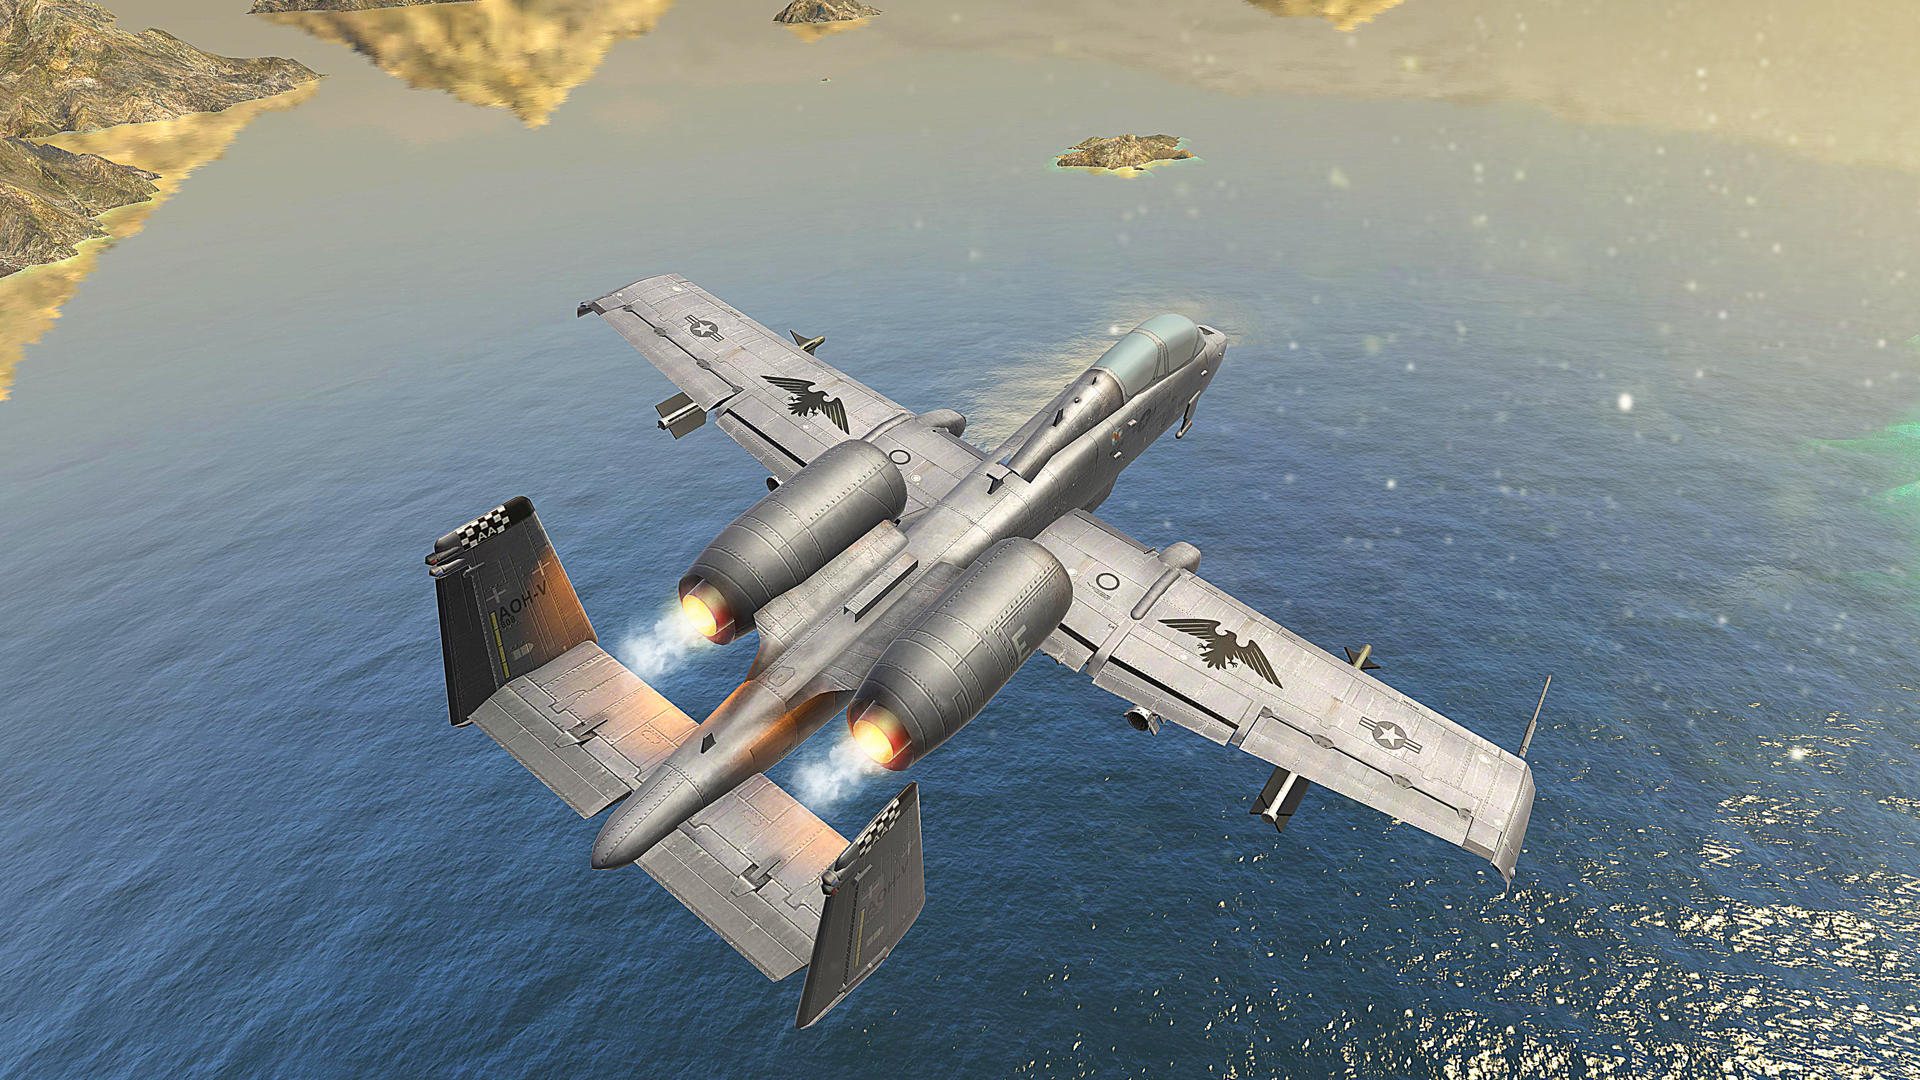 Modern War : Fighter Jet Games screenshot game